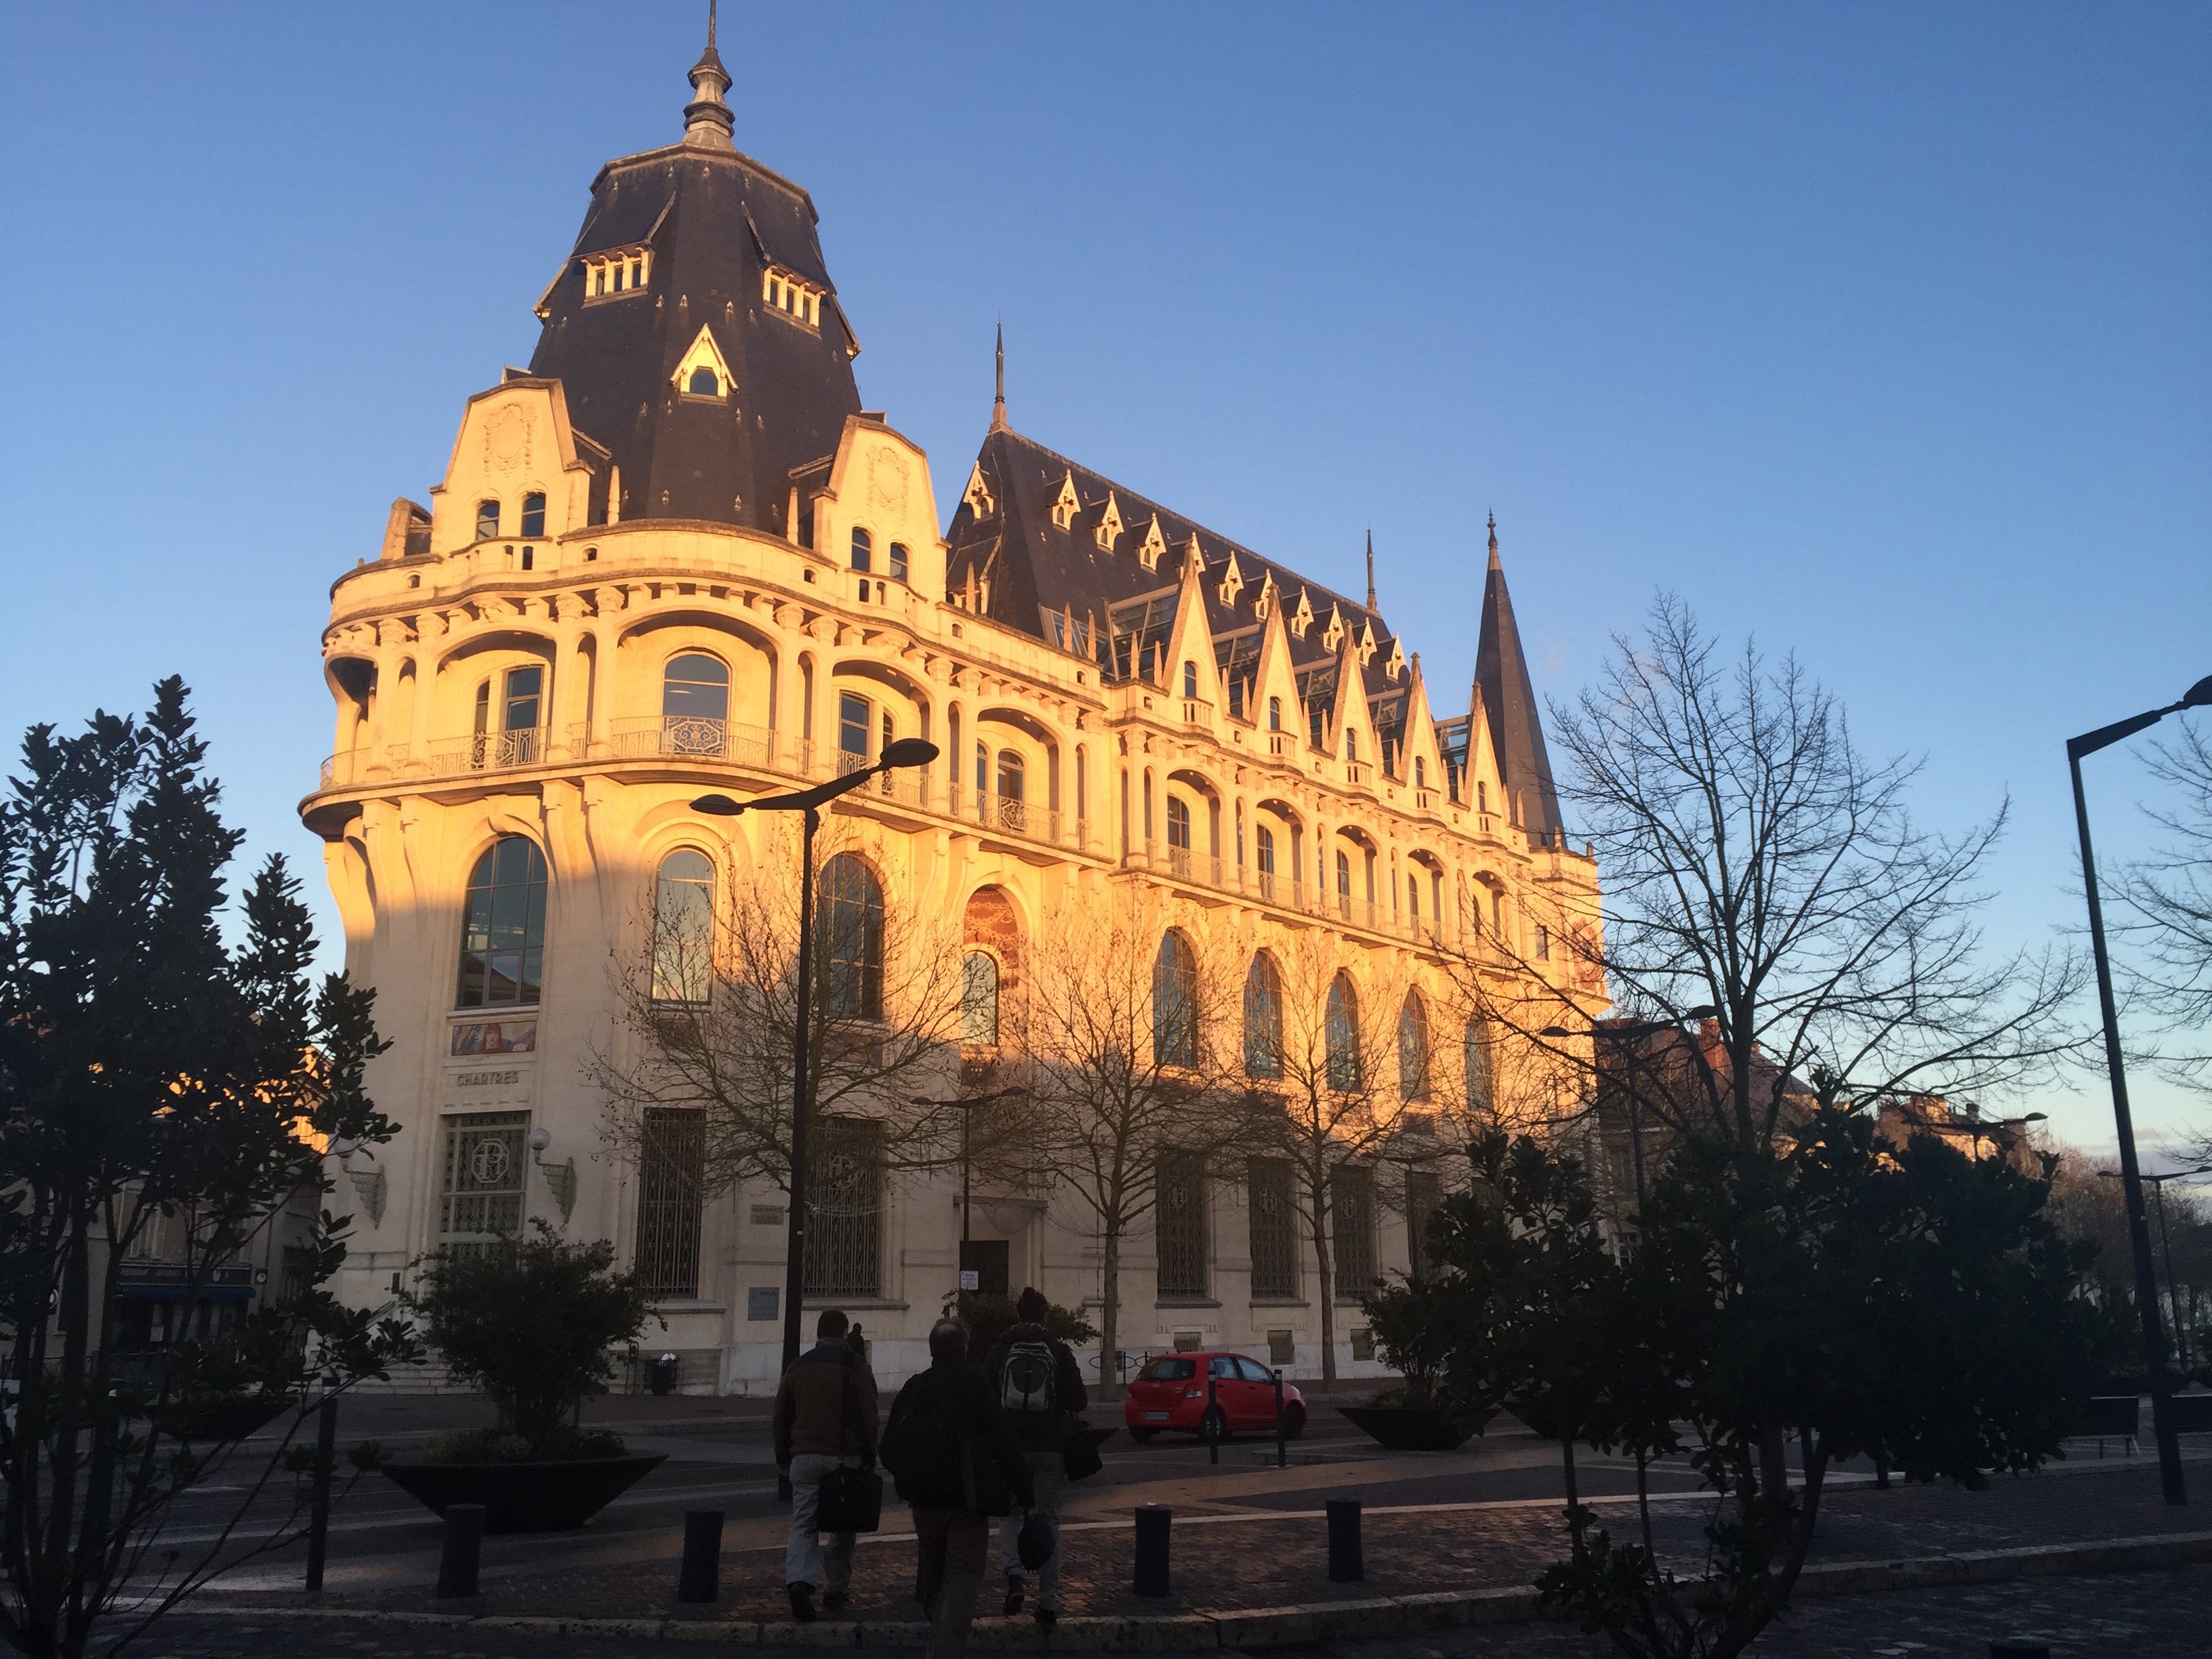 Mediatheque de Chartres